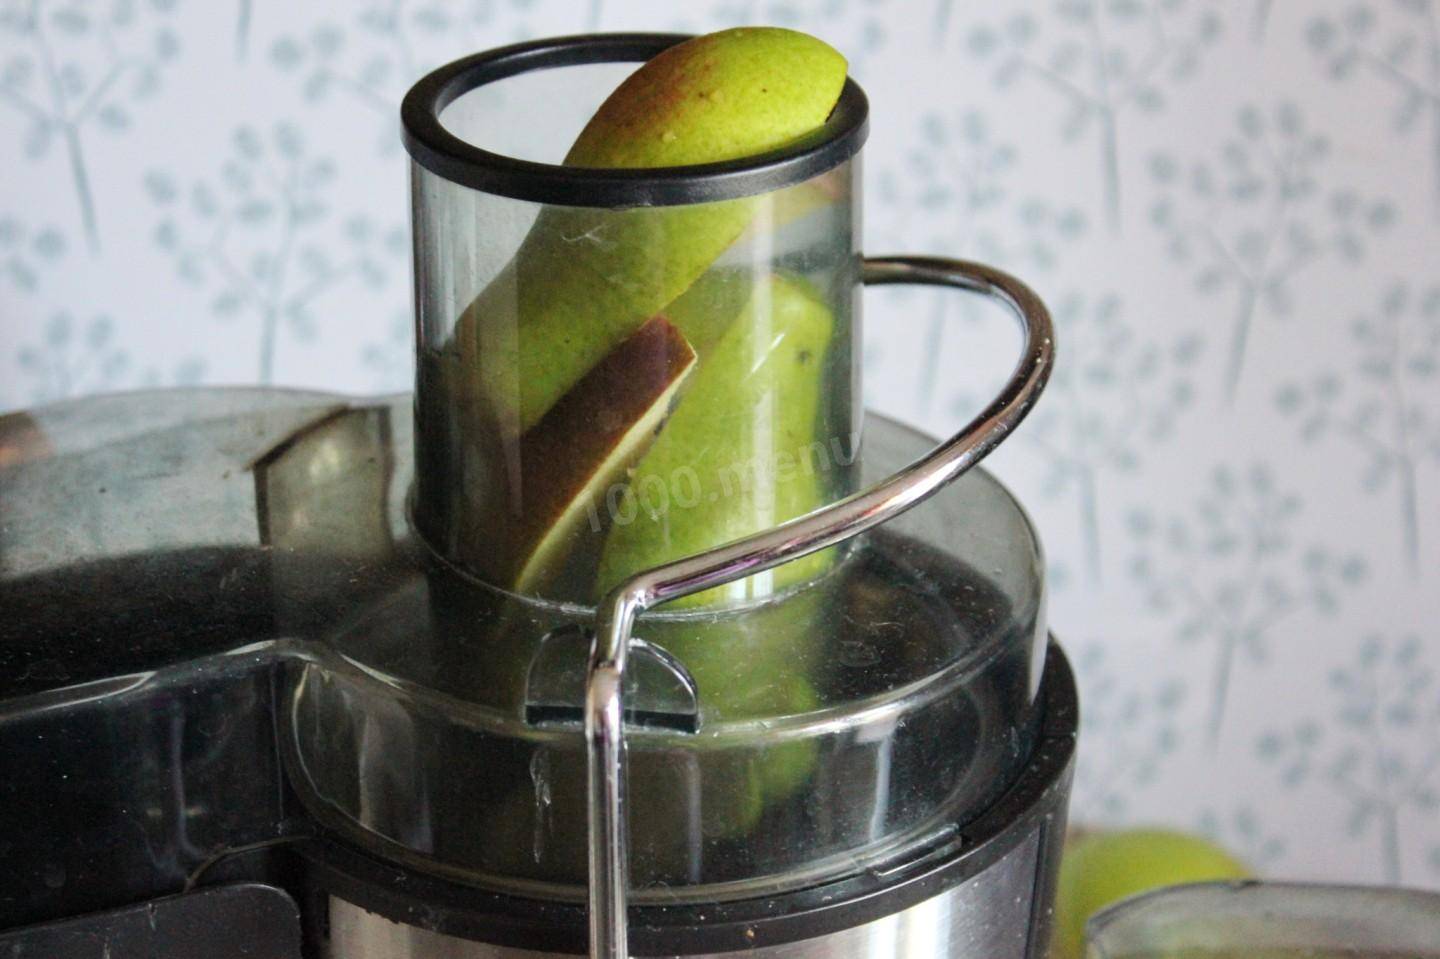 Как сделать яблочный сок на зиму: технология, рецепты